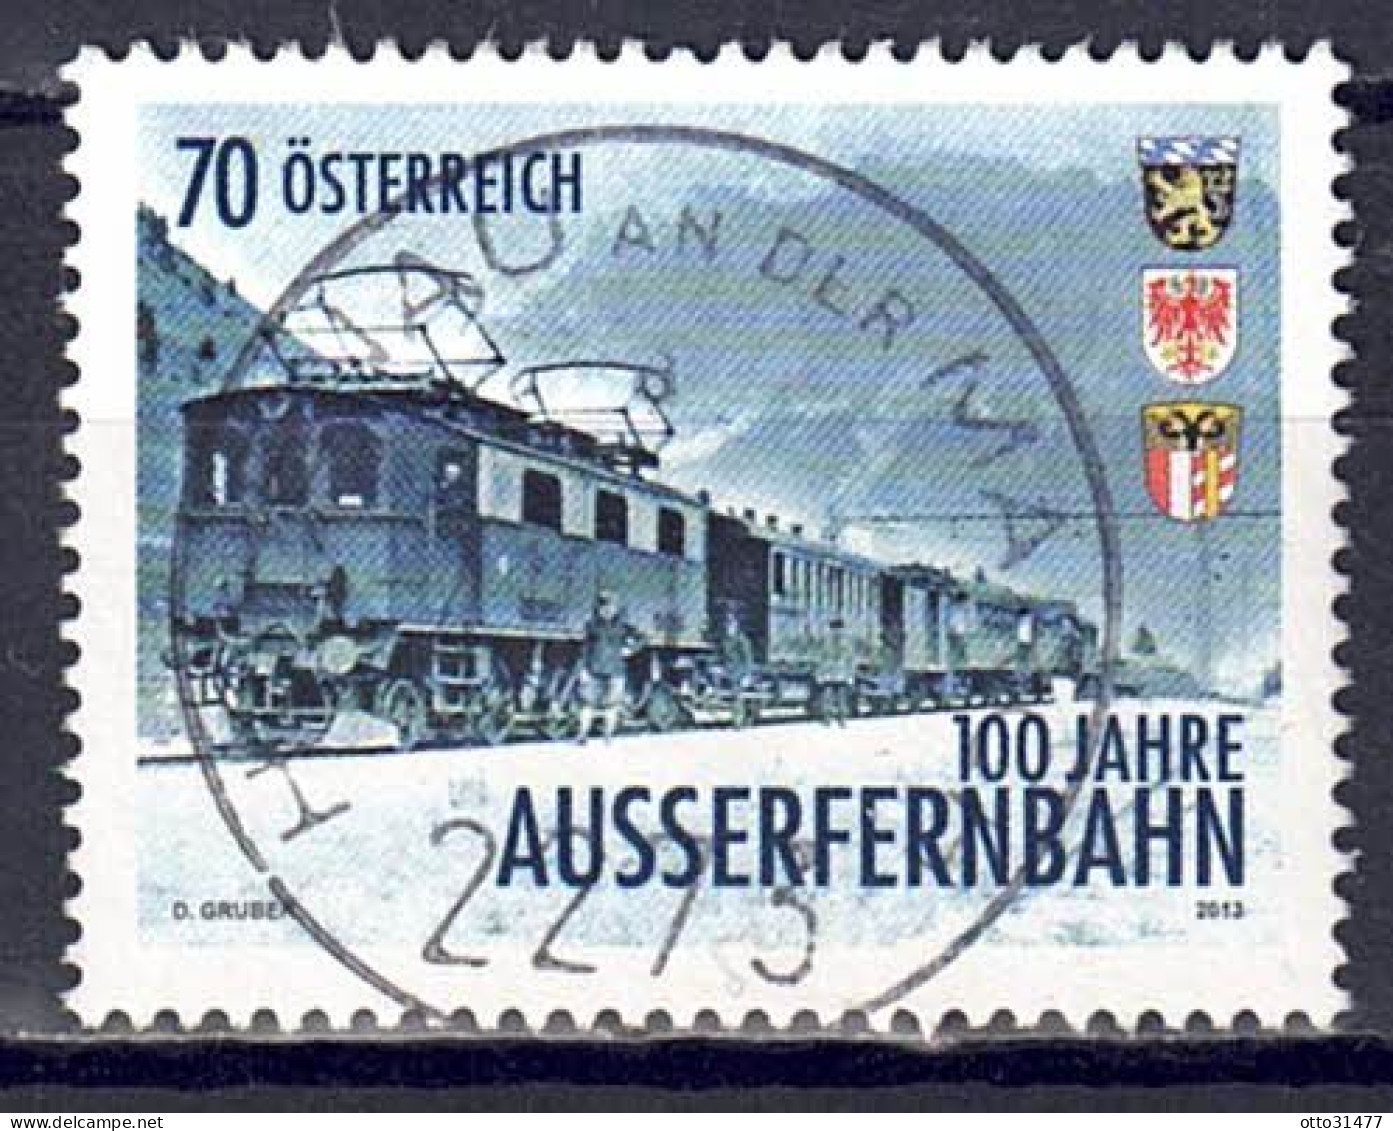 Österreich 2013 - Außerfernbahn, MiNr. 3086, Gestempelt / Used - Gebruikt